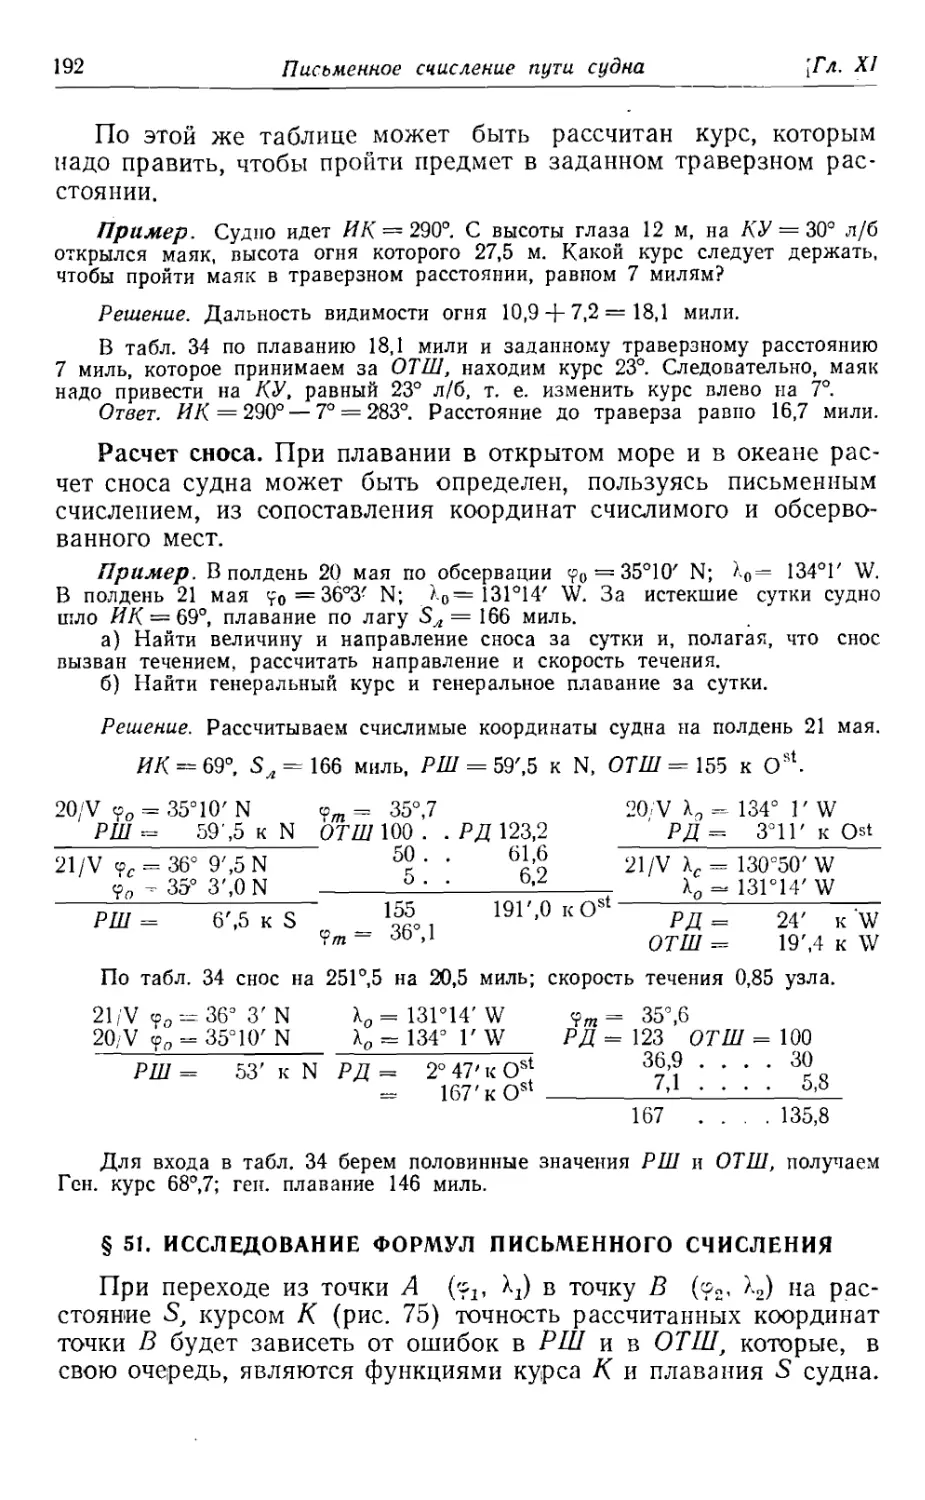 51. Исследование формул письменного счисления